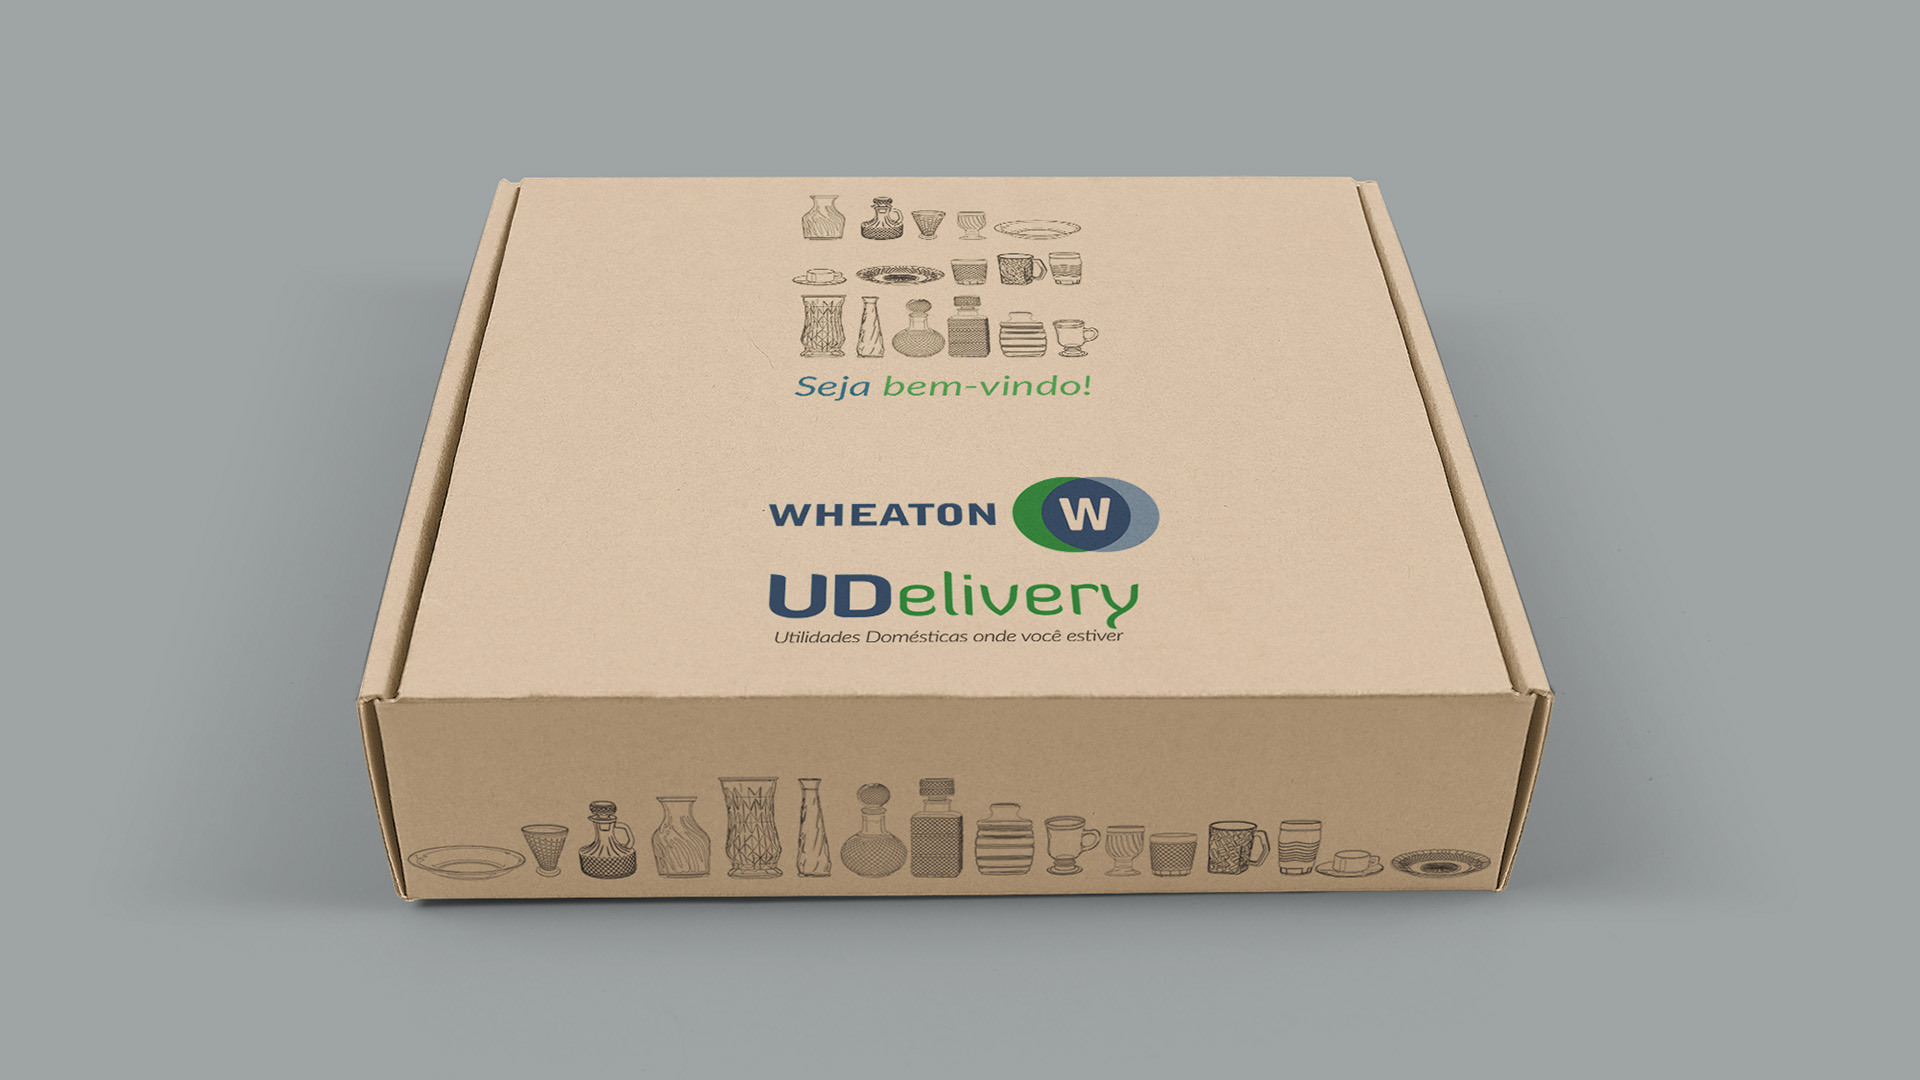 Imagem de welcome kit com identidade visual do projeto de PDV móvel Wheaton UDelivery.